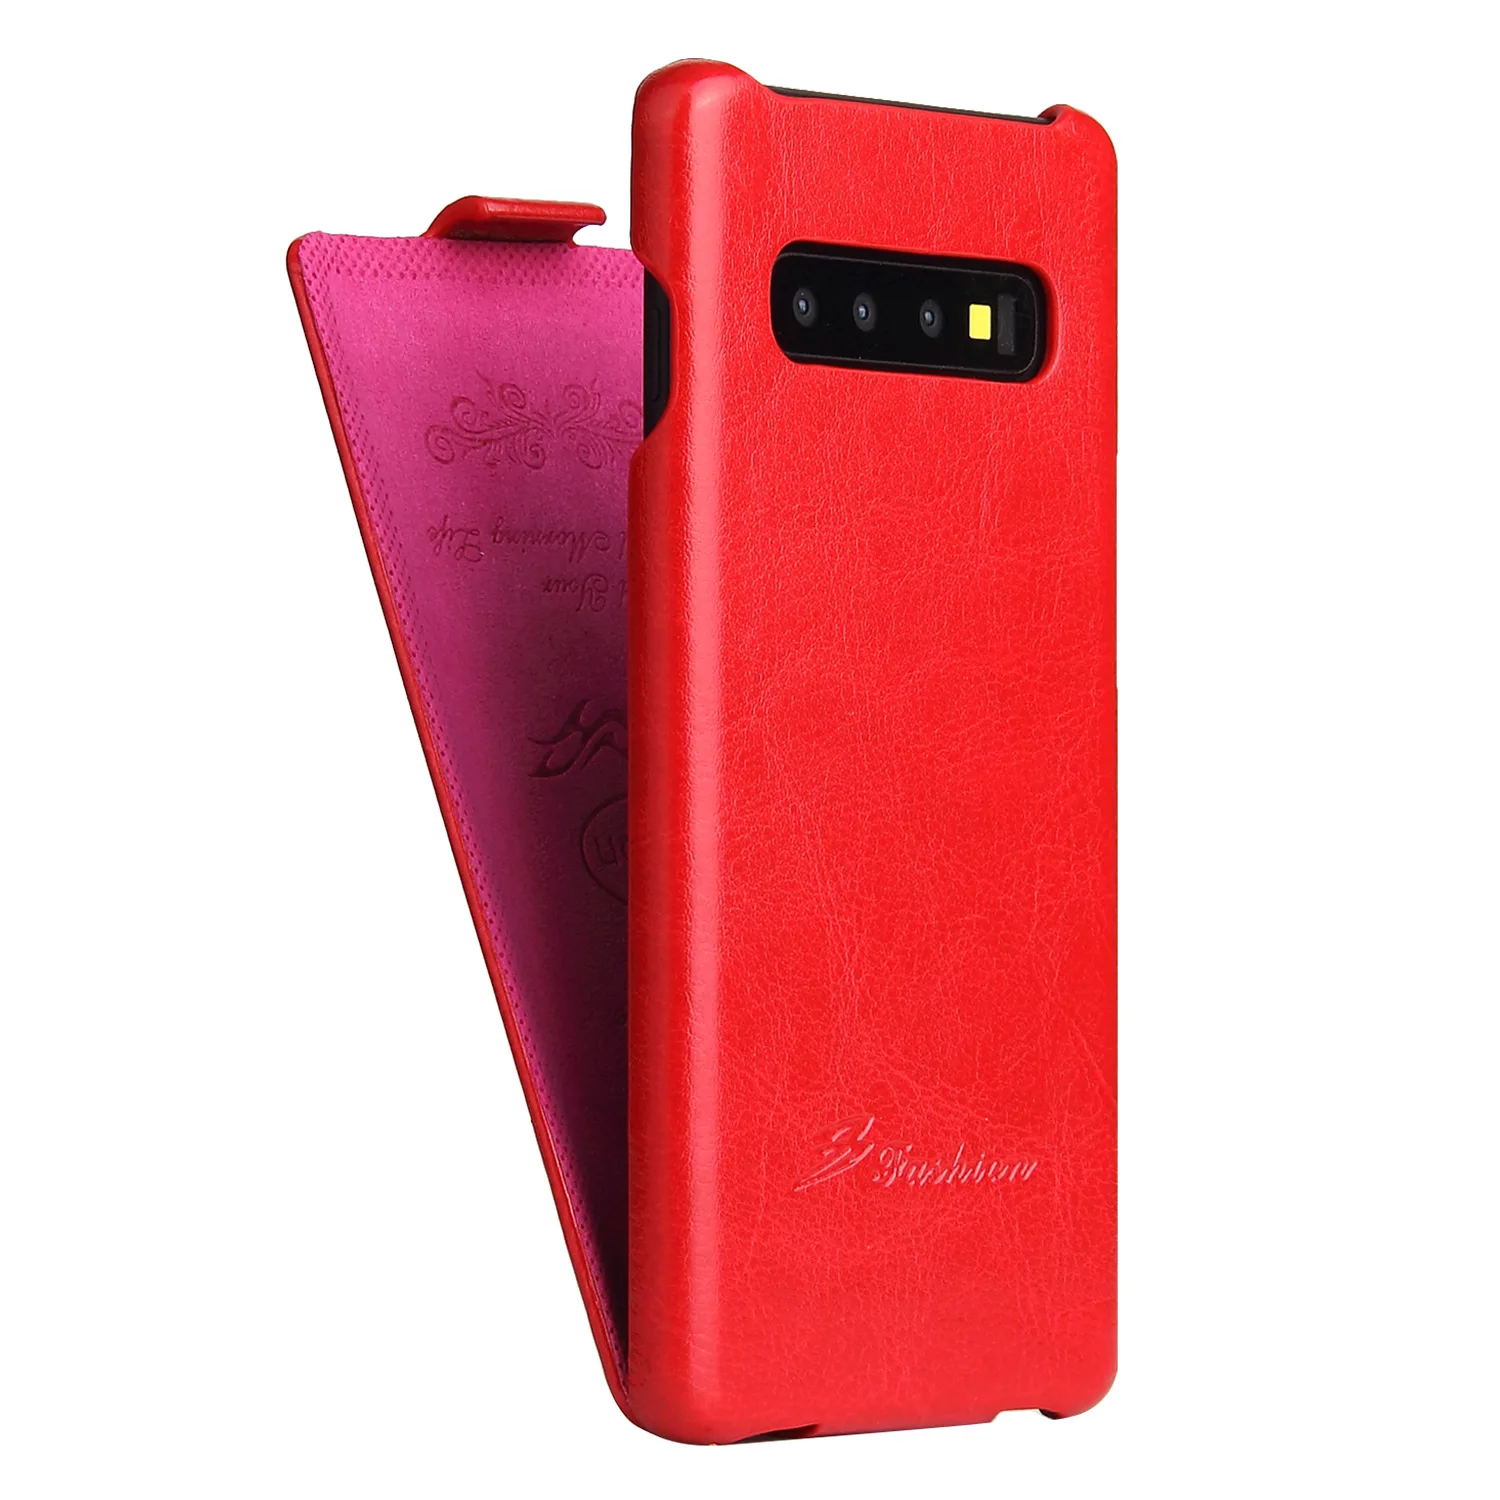 Горячая фиксированная Смешанная кожа Чехол вверх вниз чехол для samsung Galaxy Note 9 8 S9 S10 Plus S8 S7 edge черный Note9 Note8 S7edge S9+ S8 - Цвет: Красный